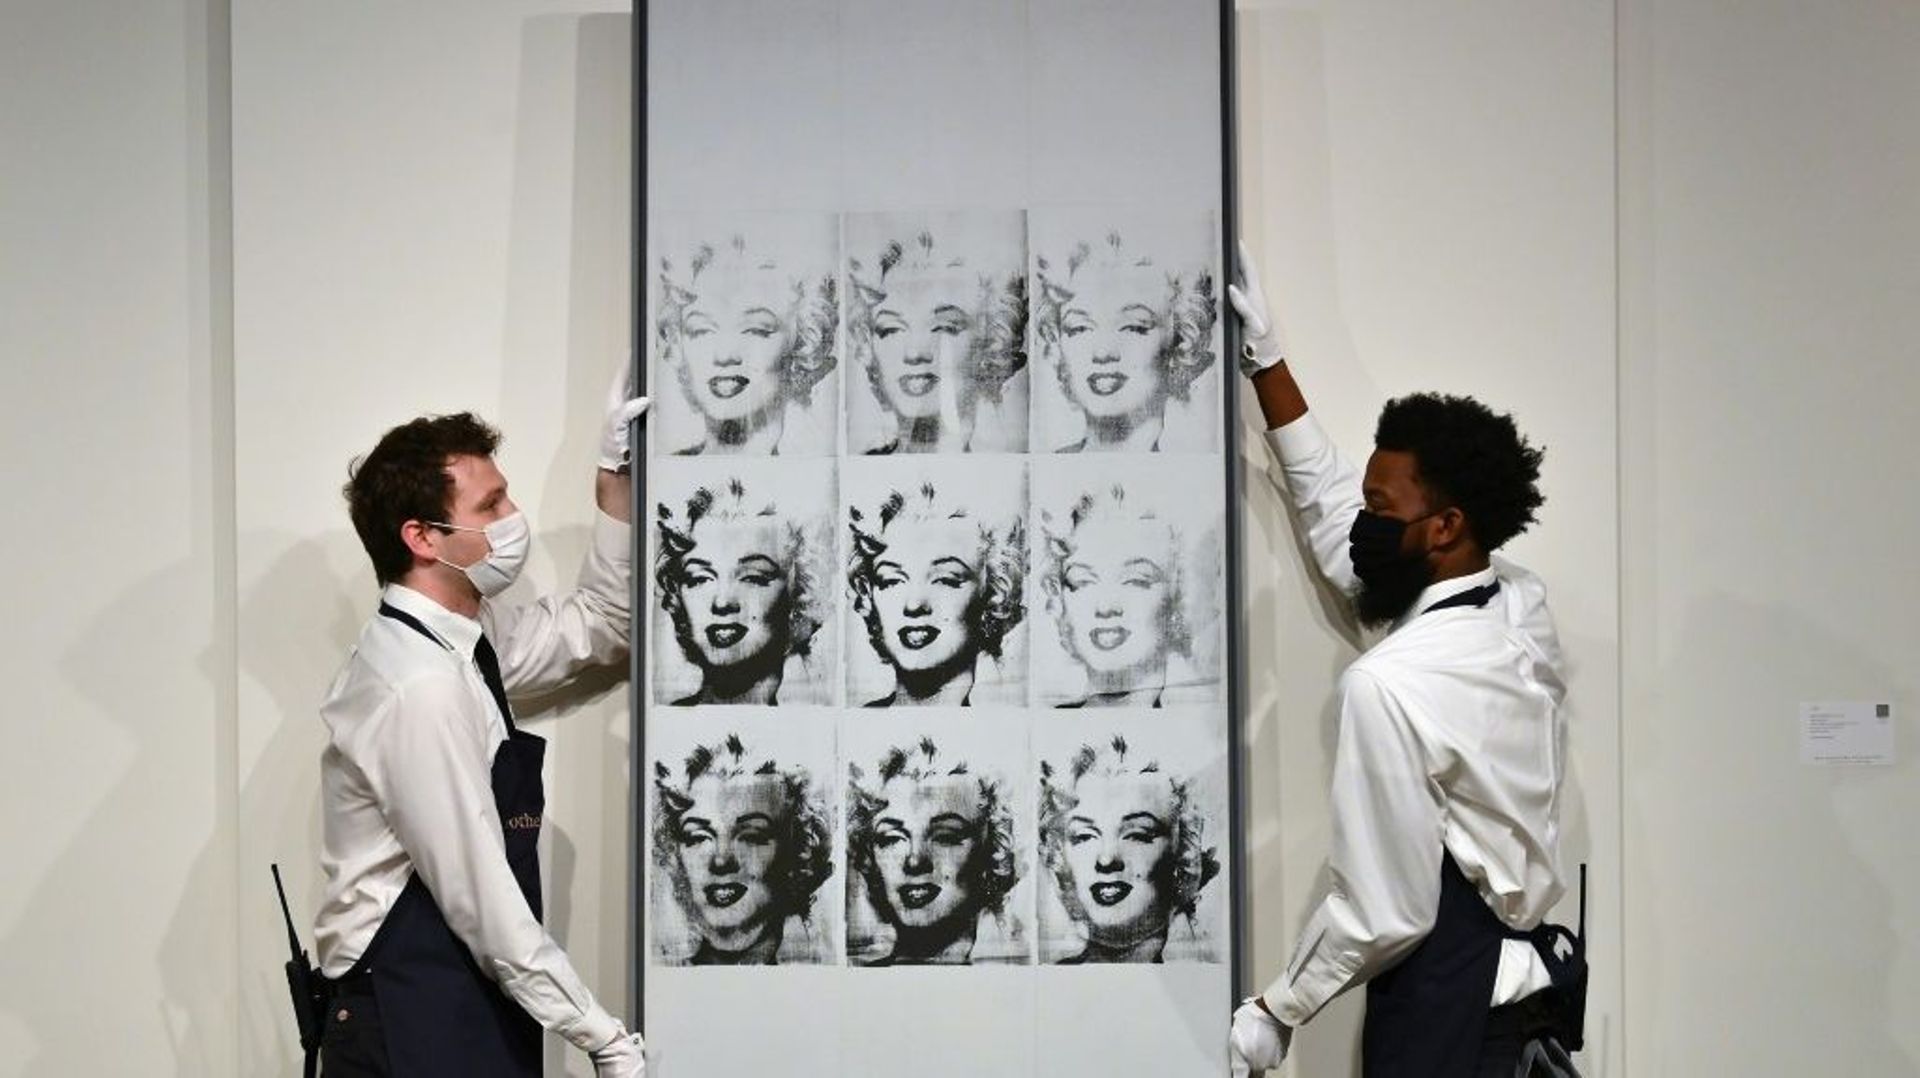 Des employés de Sotheby’s tiennent le célèbre tableau d’Andy Warhol "Nine Marylins", le 5 novembre 2021 à New York